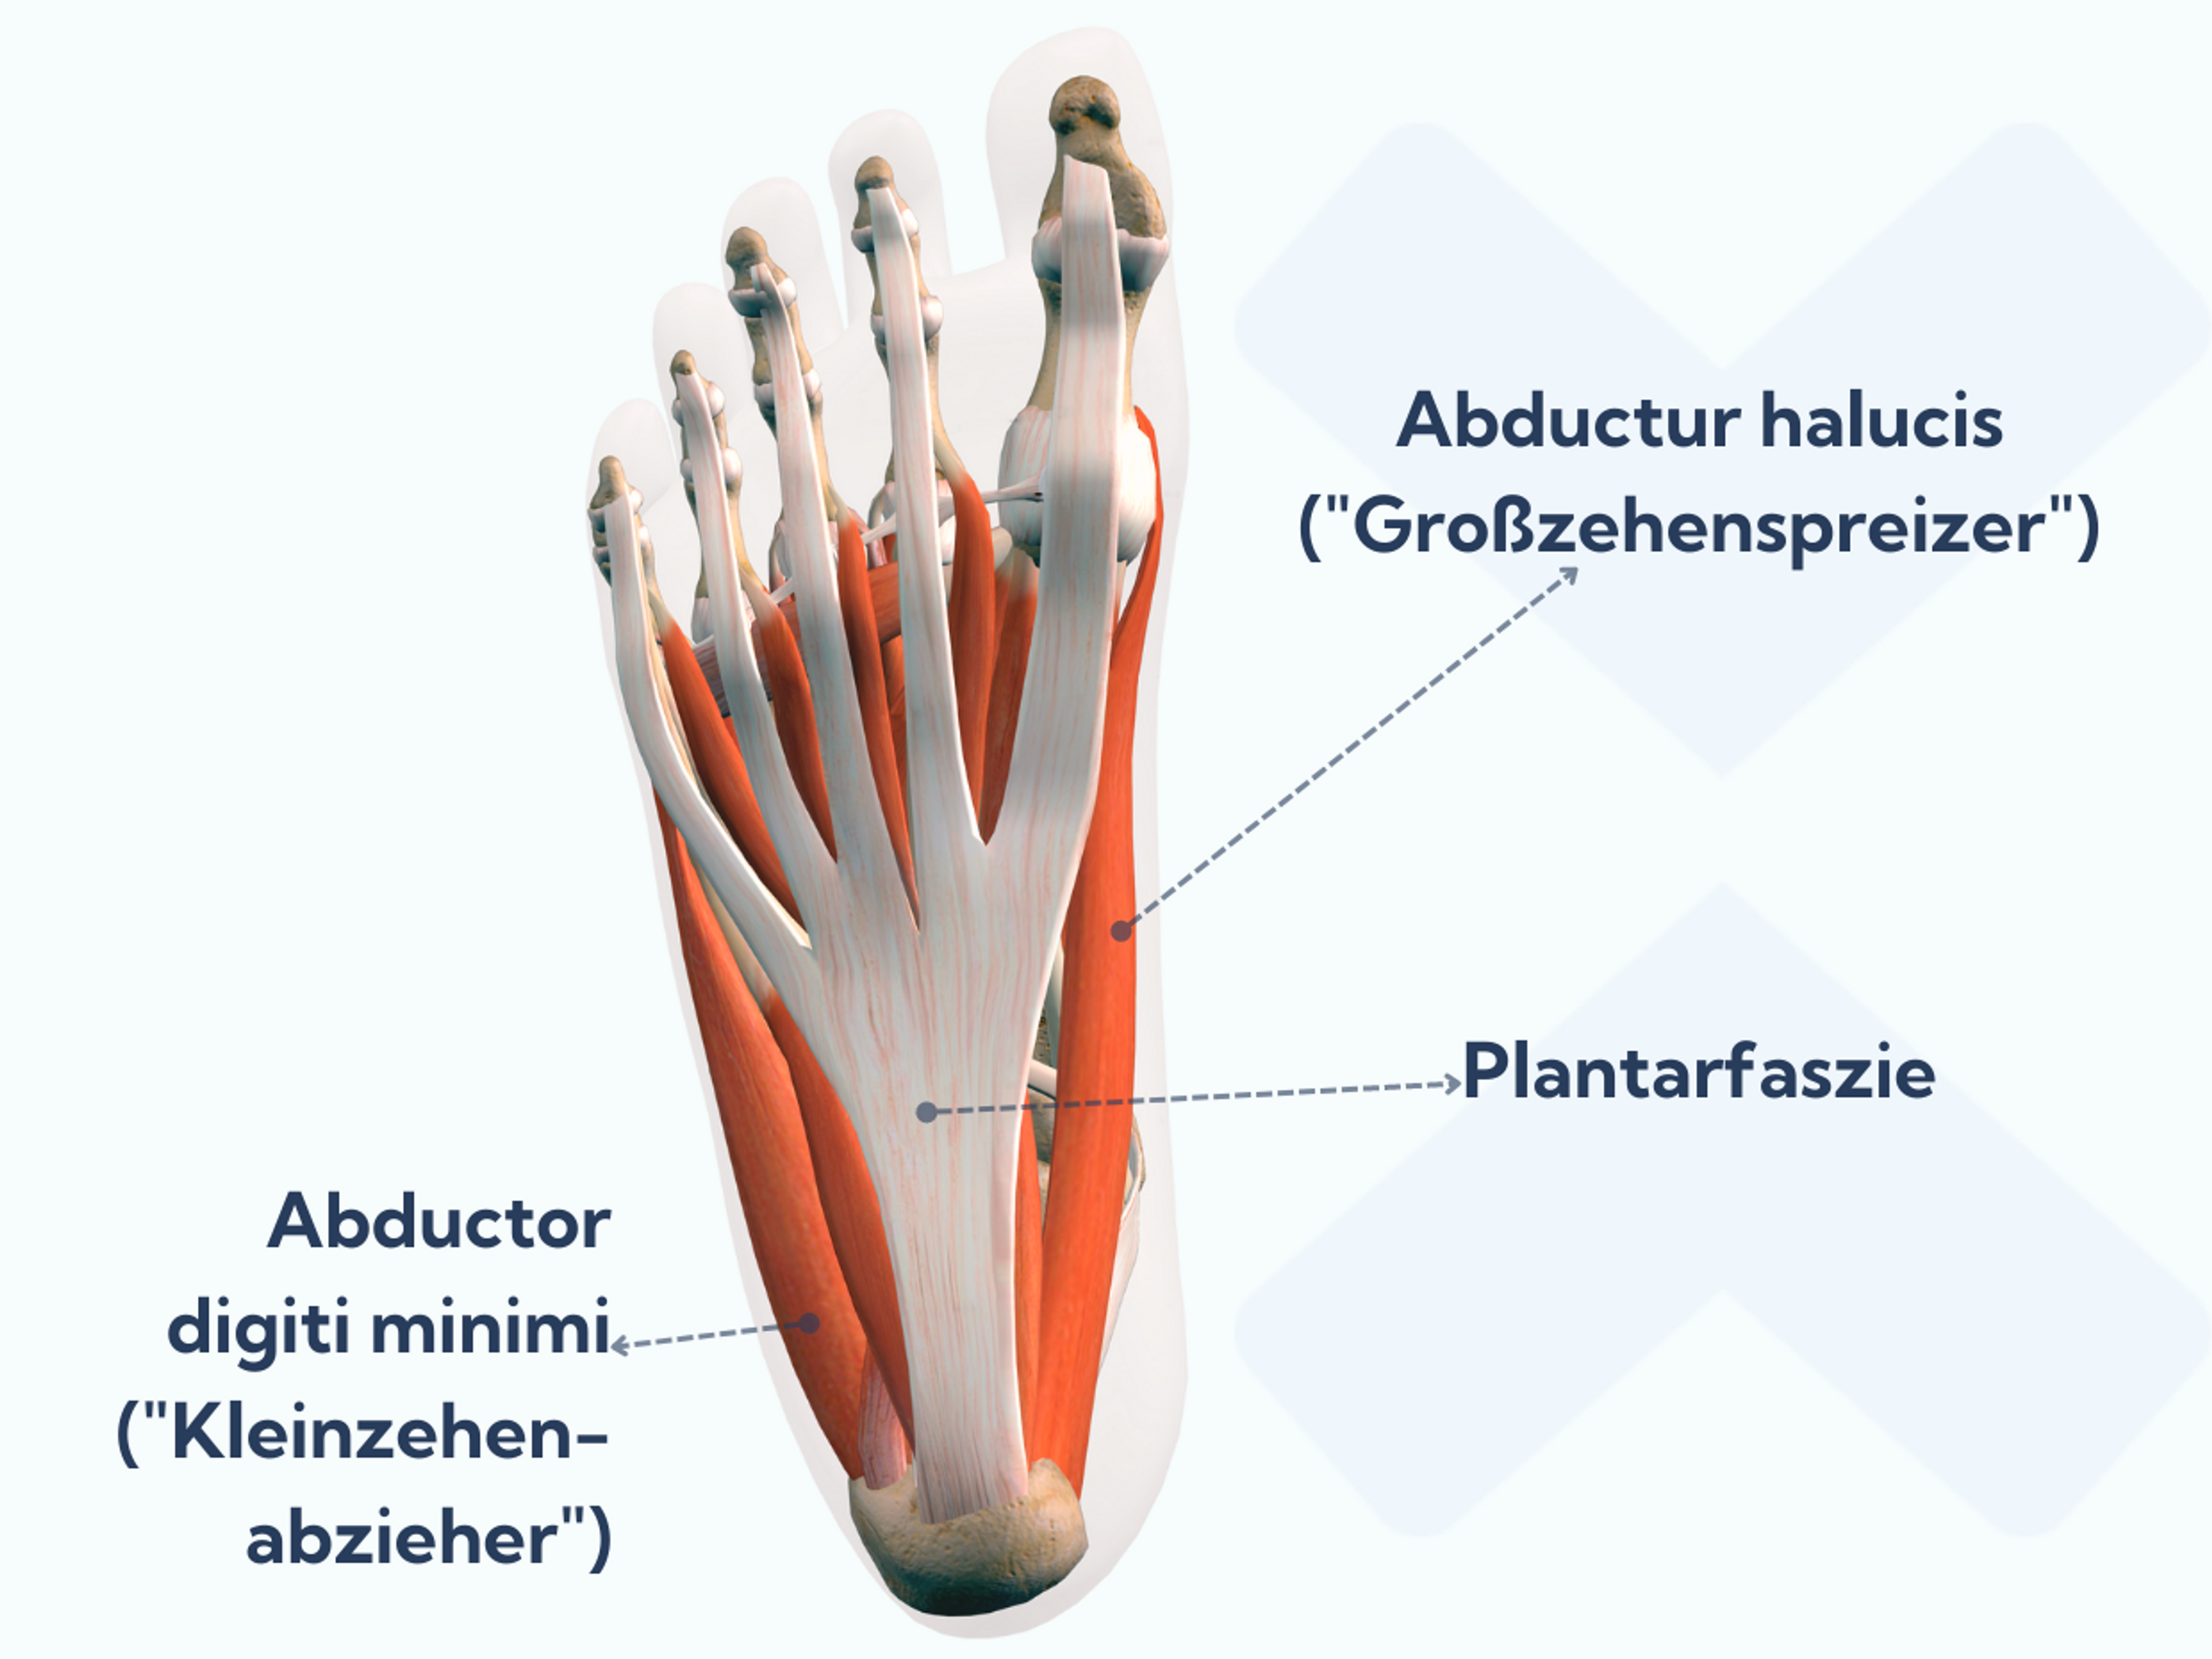 Der Großzehenspreizer (Musculus abductor hallucis) und der Kleinzehenspreizer (Musculus abductor digiti minimi) gehören zur obersten Schicht der intrinsischen Fußmuskulatur.